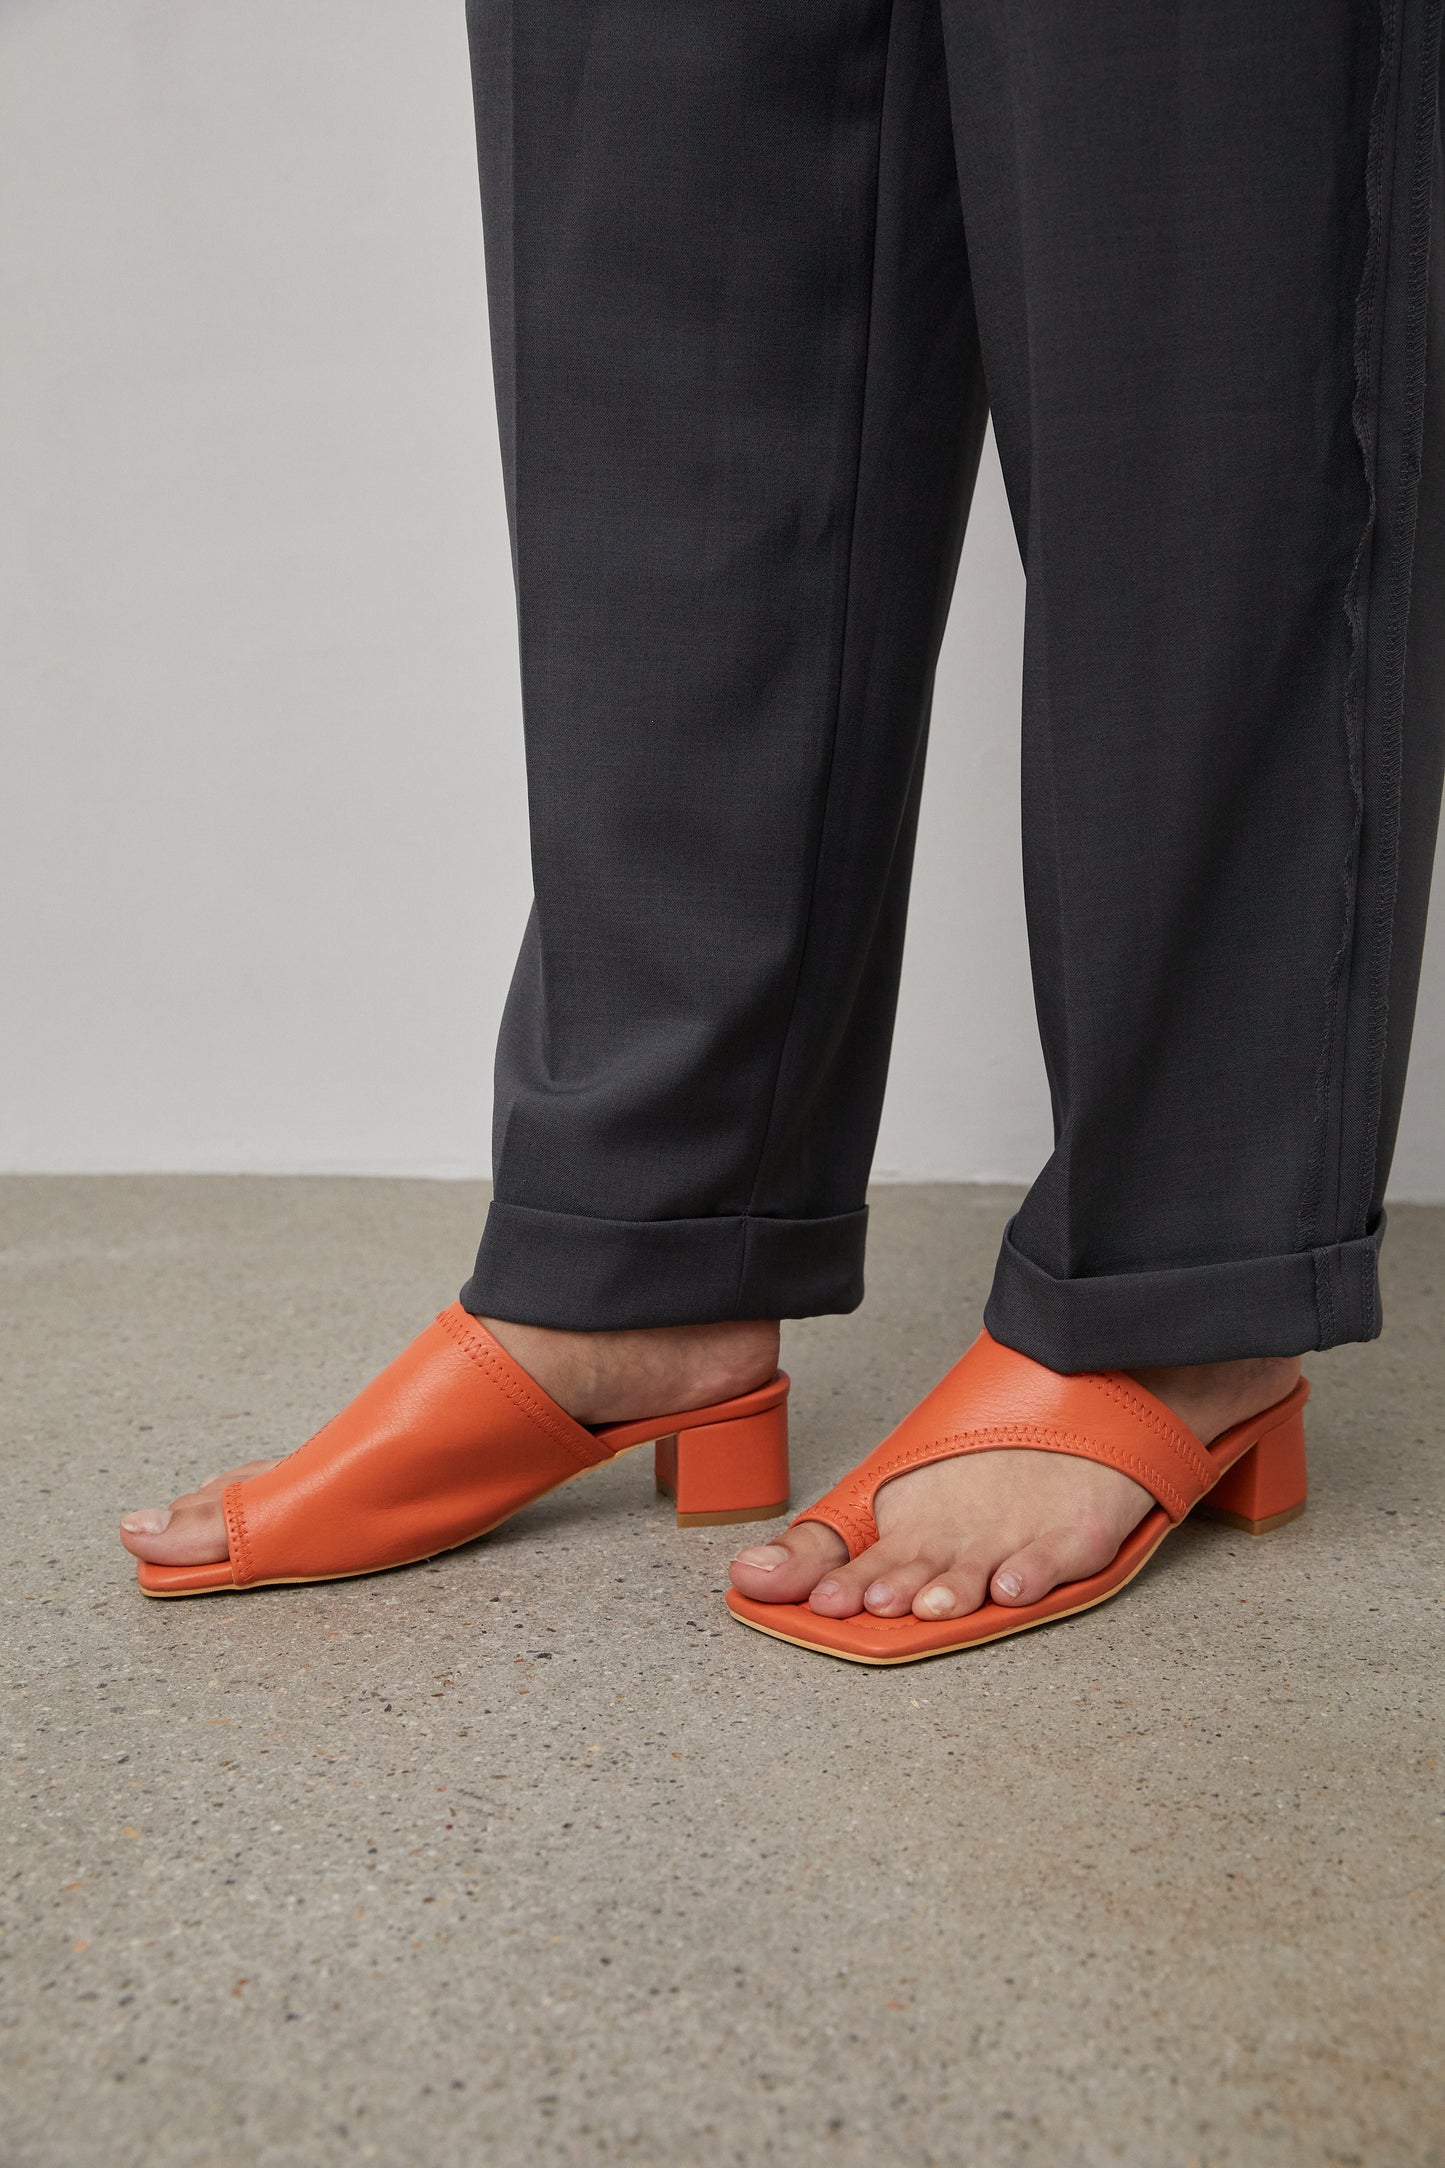 Asymmetrical Toe Loop Sandals, Tangerine